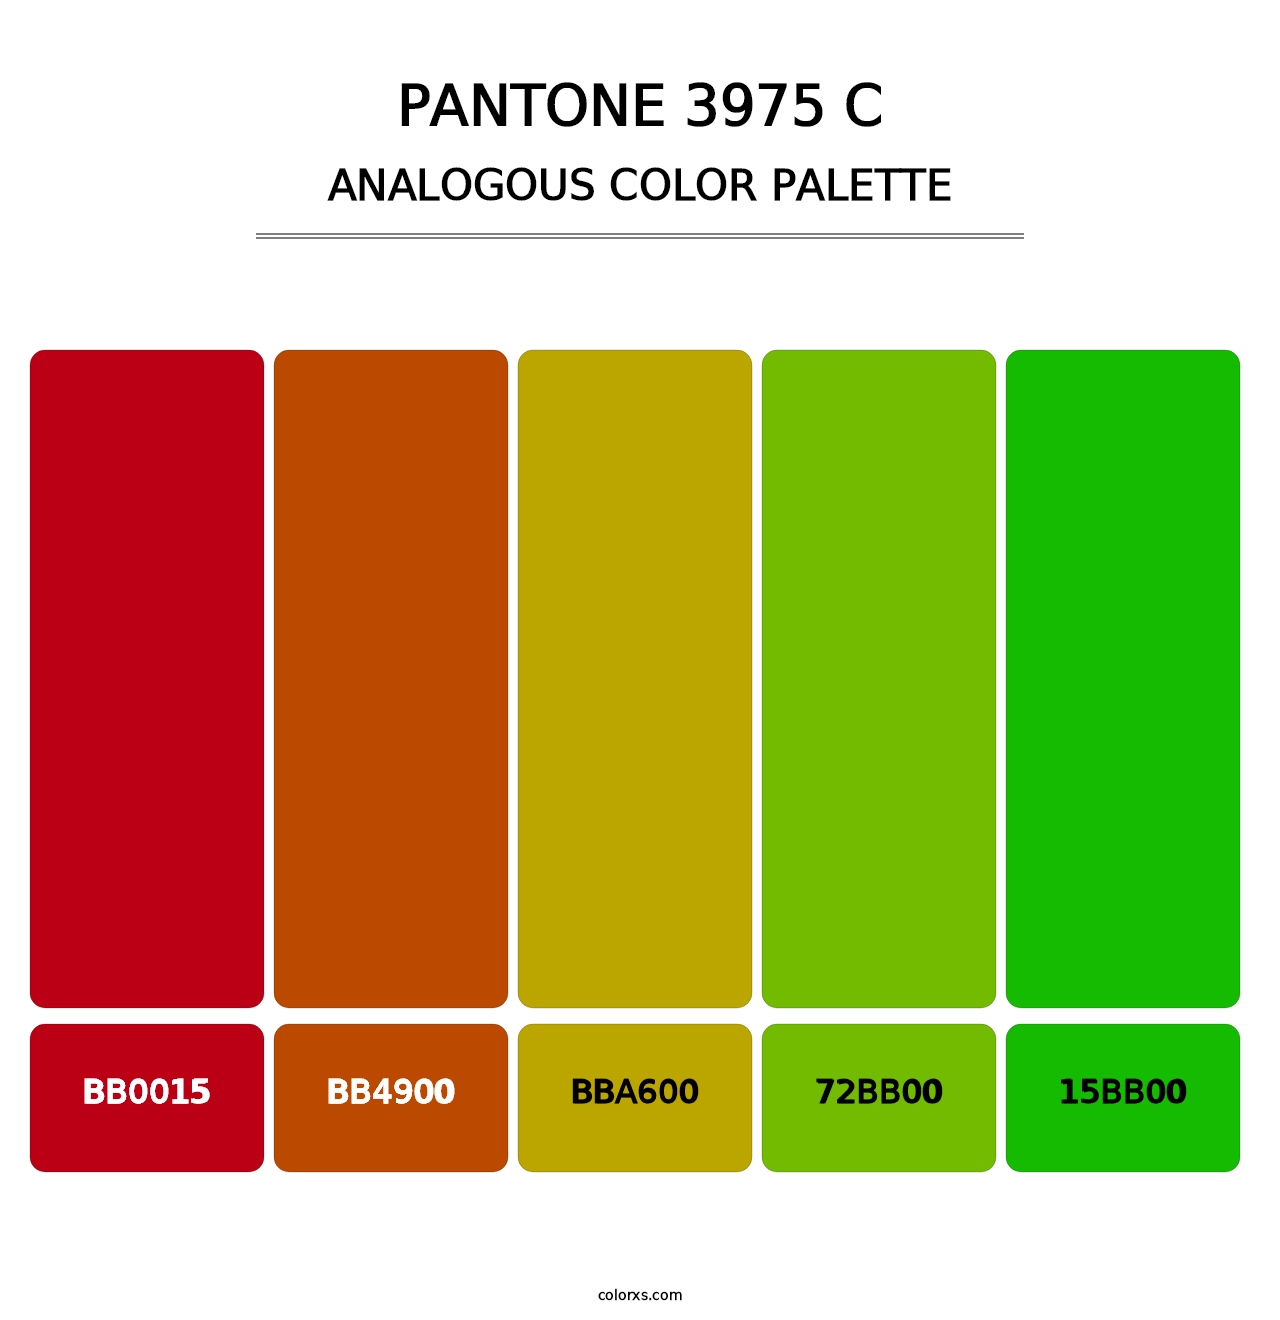 PANTONE 3975 C - Analogous Color Palette